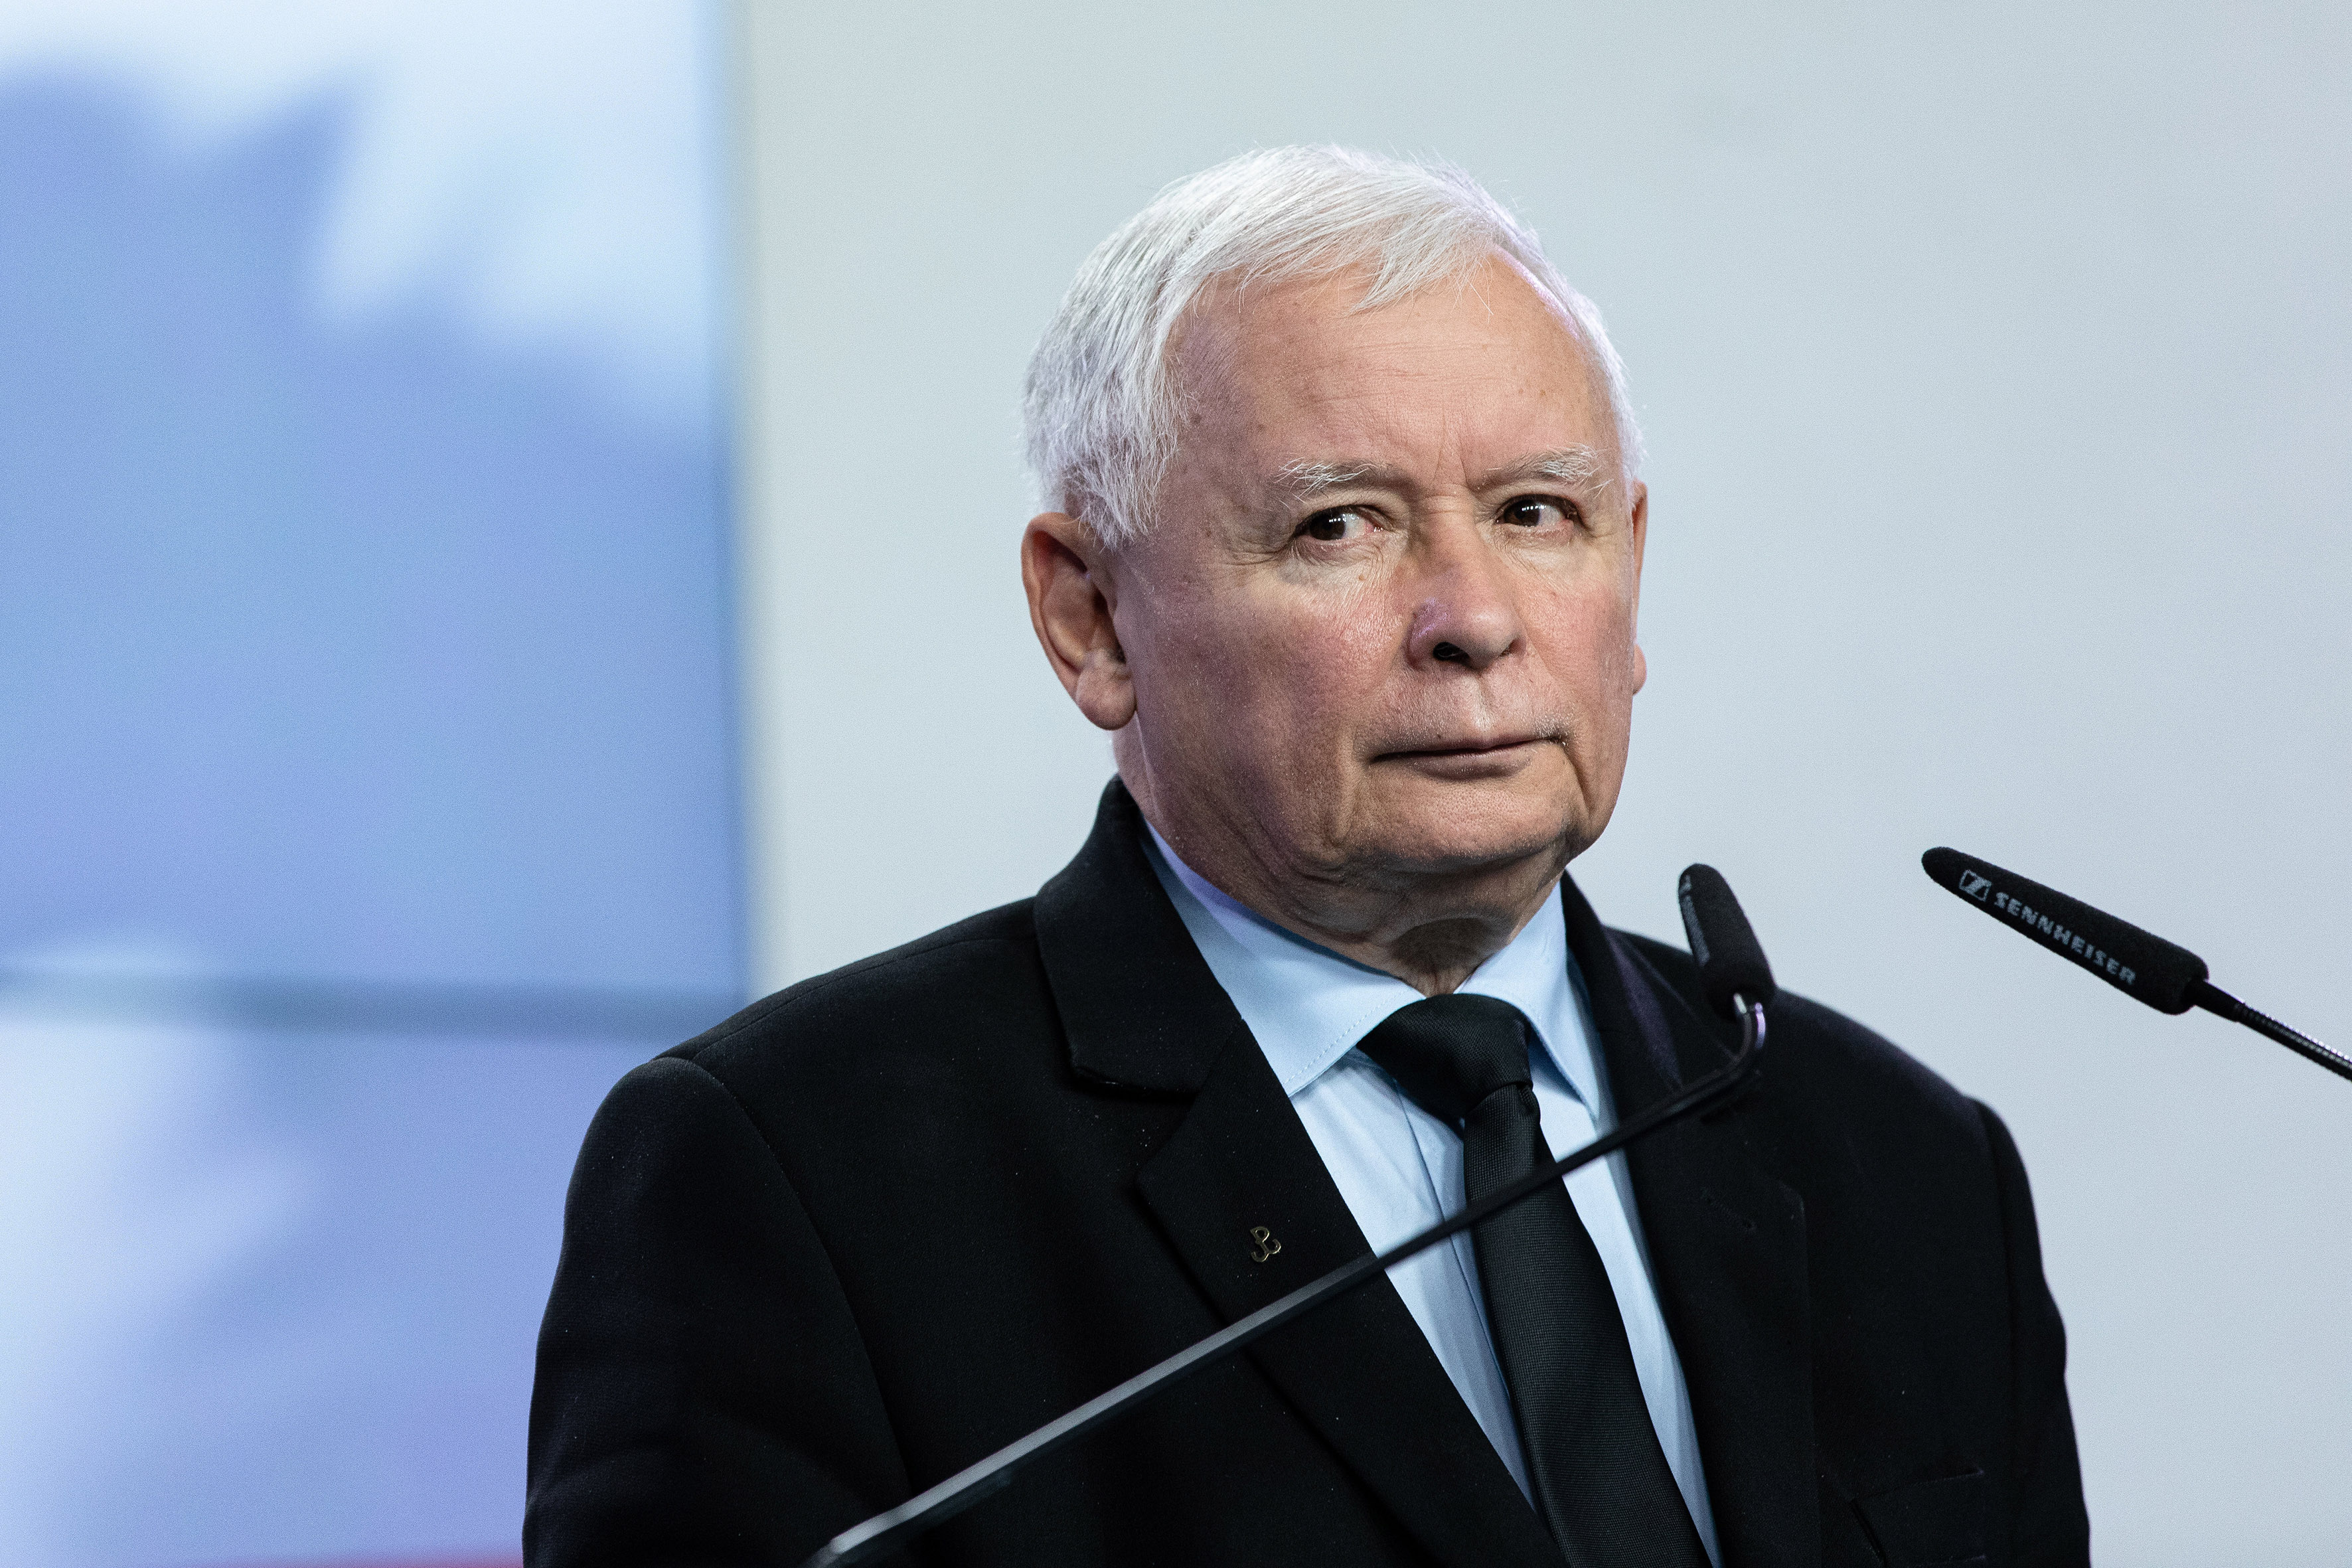 Nie mam wątpliwości co do tego, że po naszej stronie działają aktywnie rosyjskie służby specjalne. Radio Maryja jest dziś głęboko antyzachodnie, niechętnie nastawione do hierarchii kościelnej, prorosyjskie, wcale nie nieżyczliwe PRL – Jarosław Kaczyński w 1998 roku w „Gazecie Polskiej”.